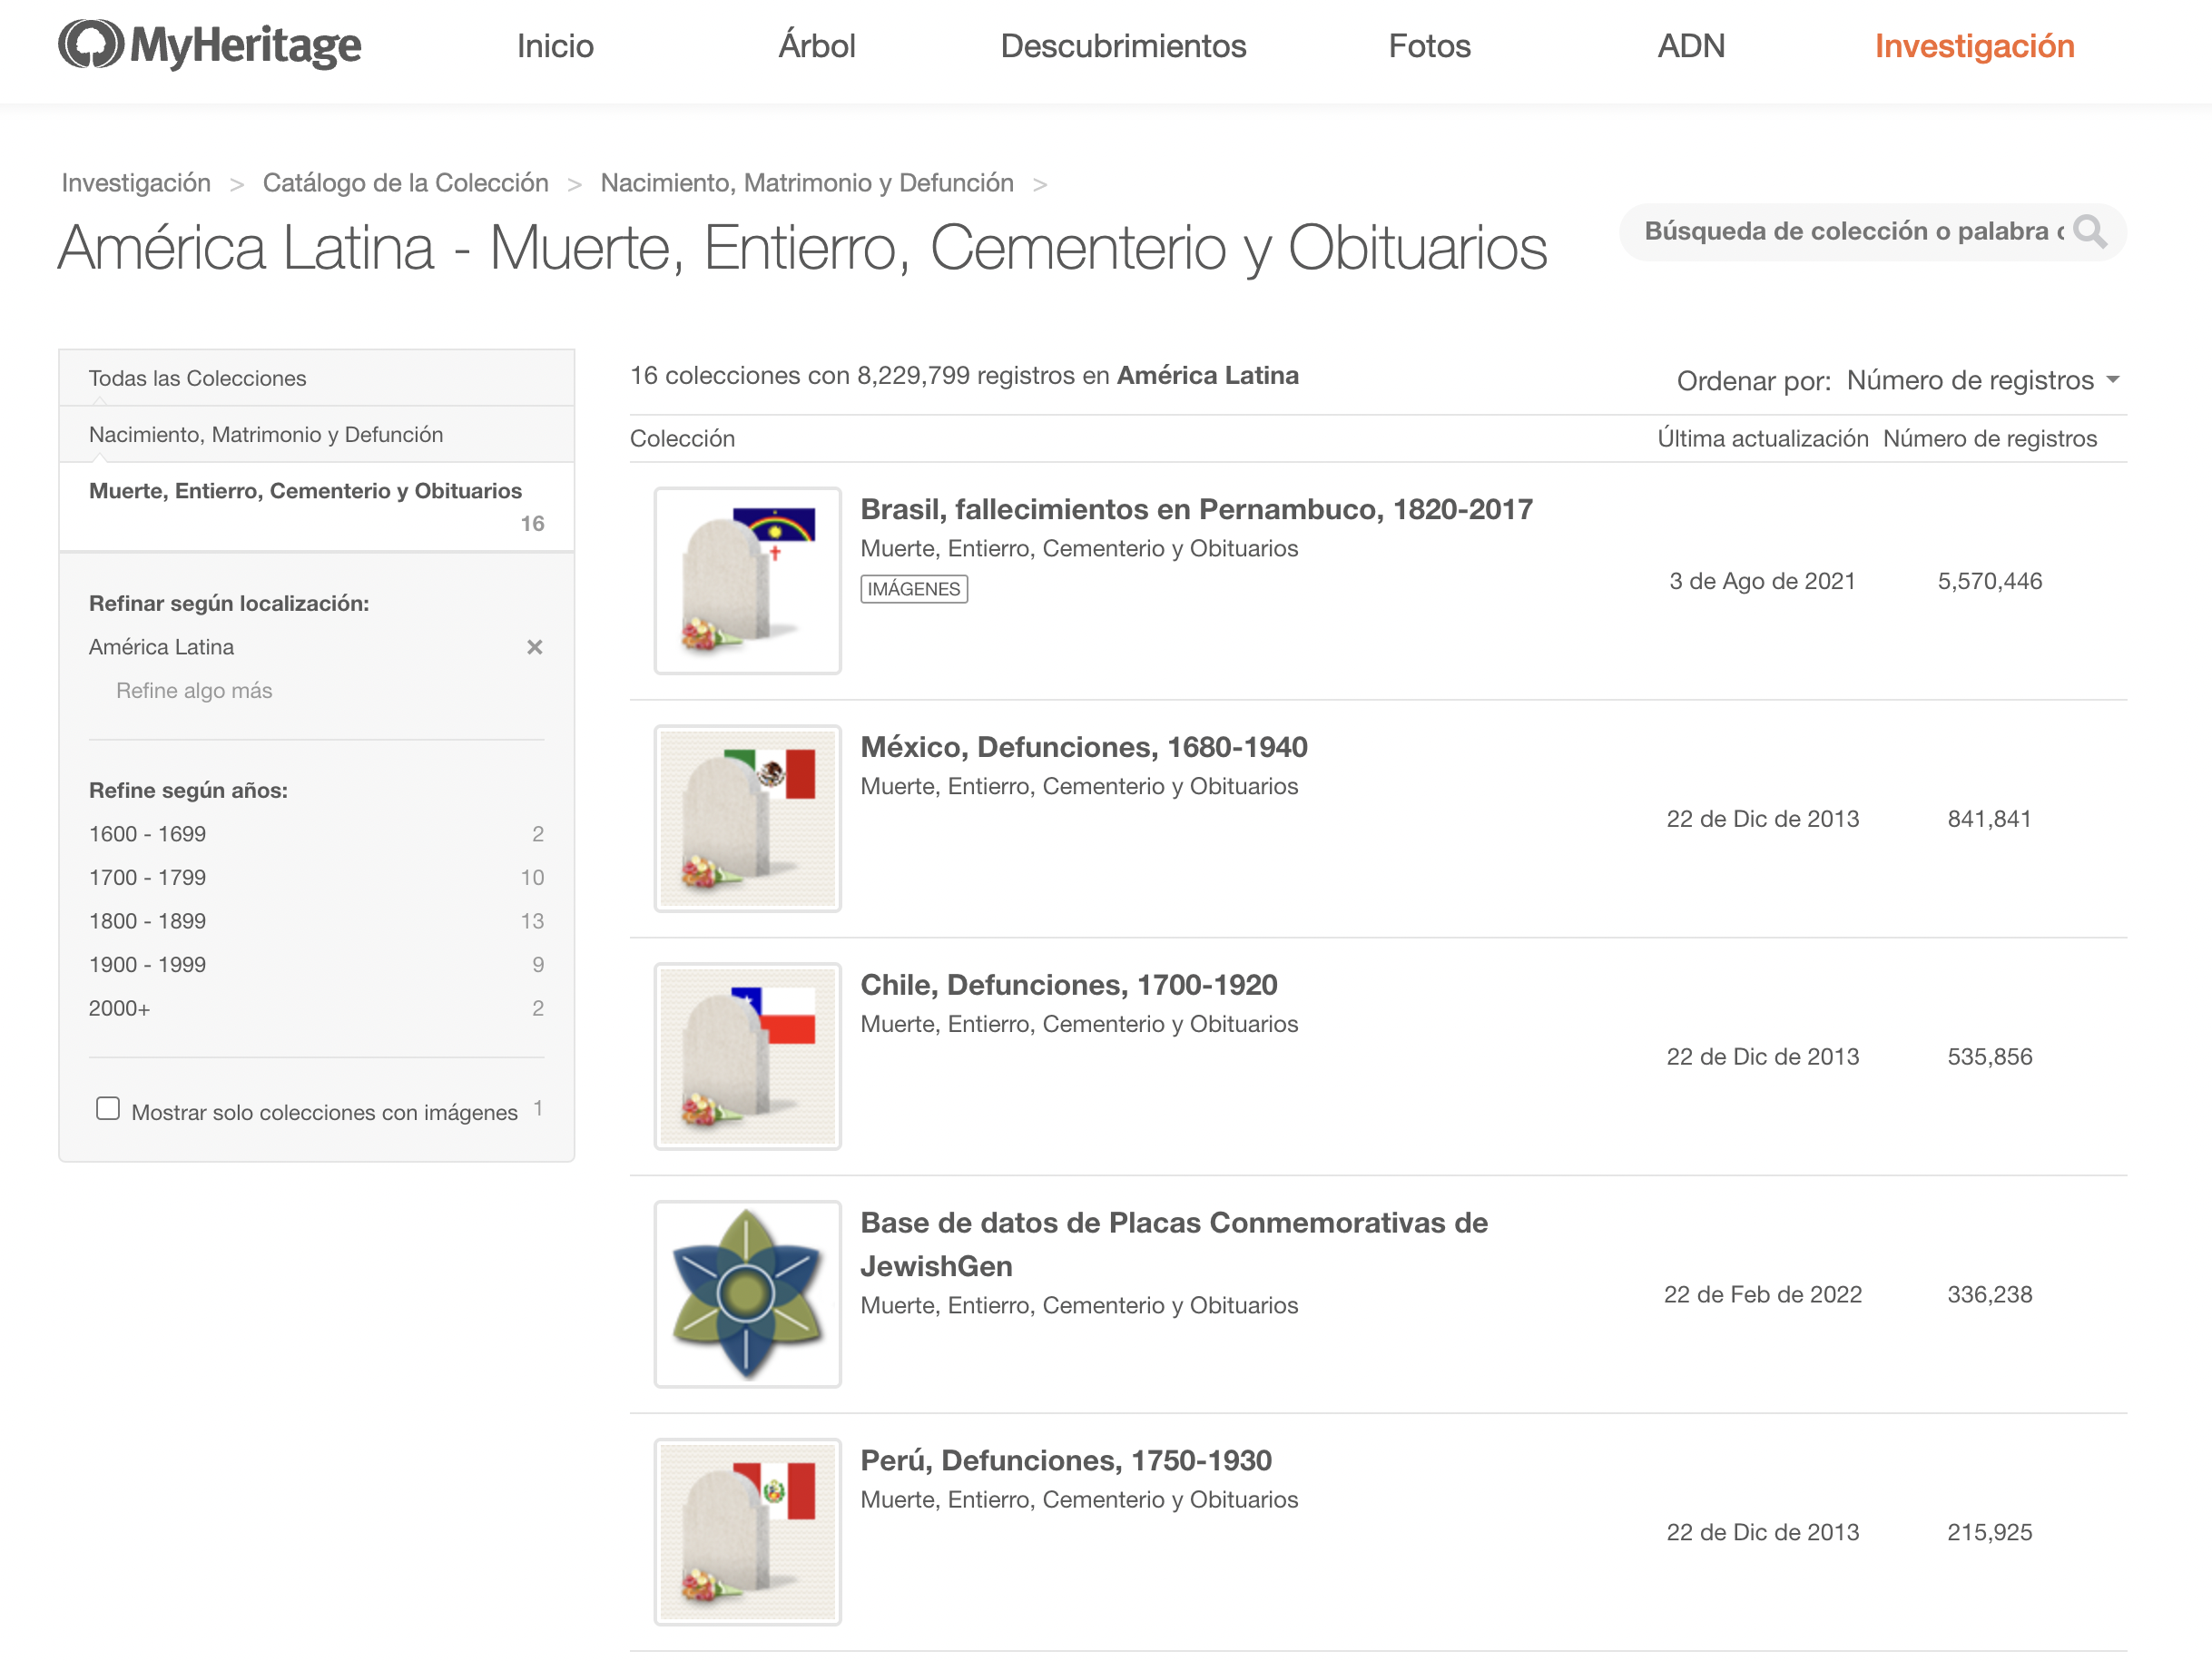 Registros relacionados con las defunciones en MyHeritage (en este caso de América Latina).